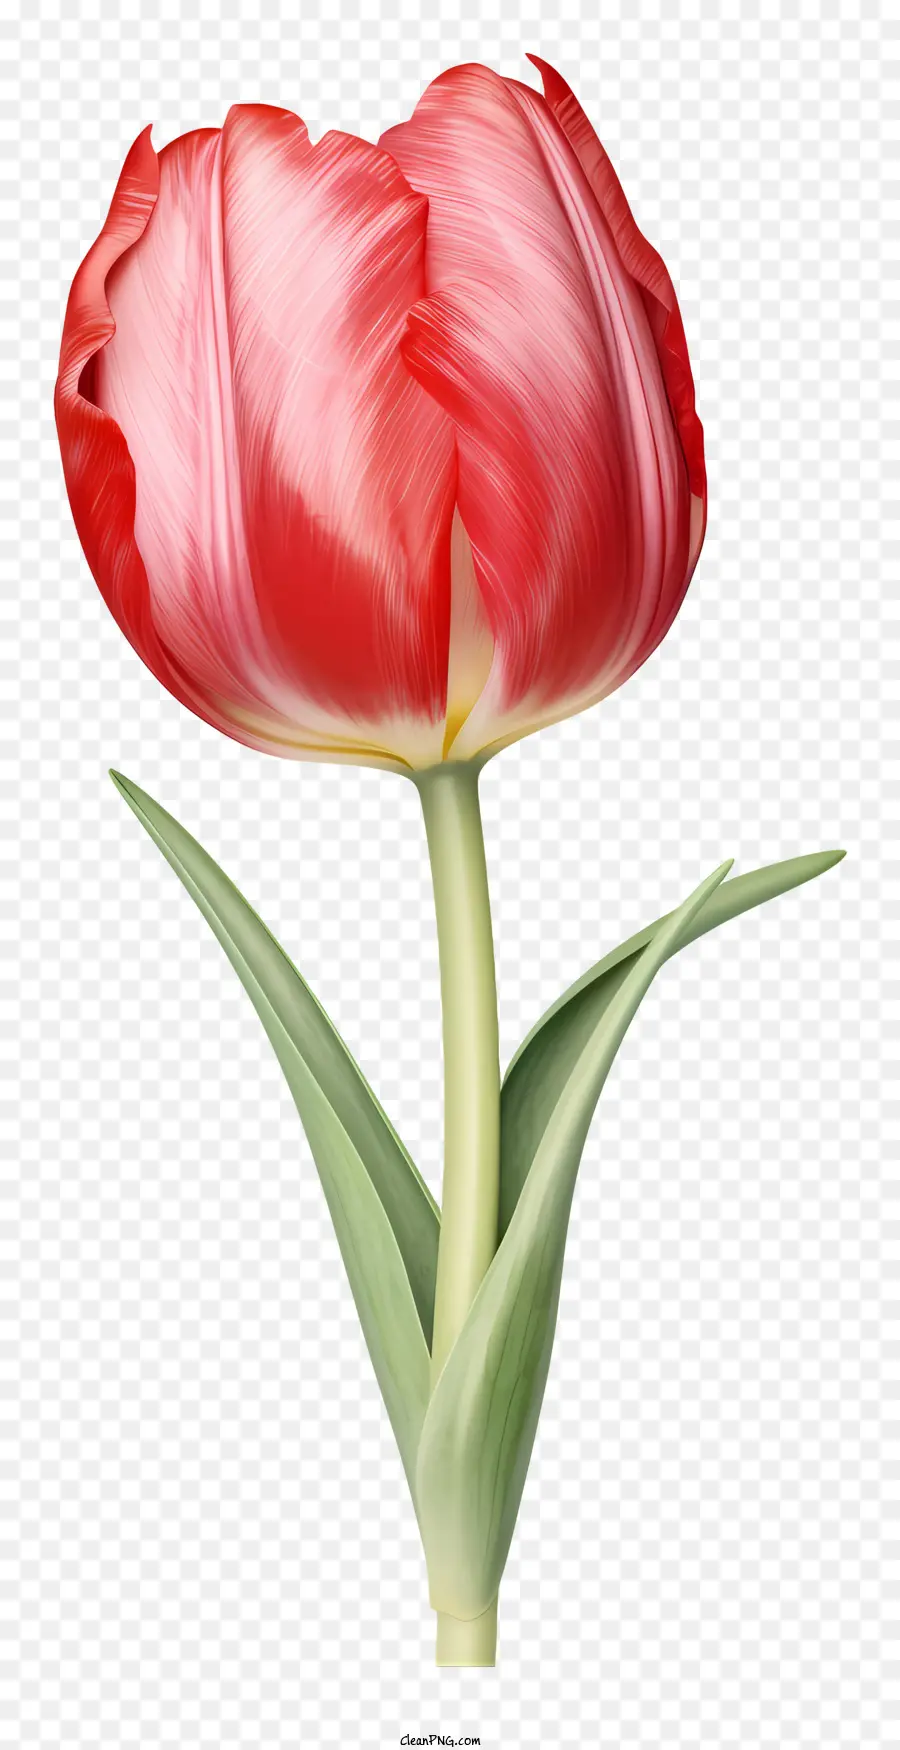 fiore rosso - Tulipano rosso realistico su sfondo nero con petali diffusi